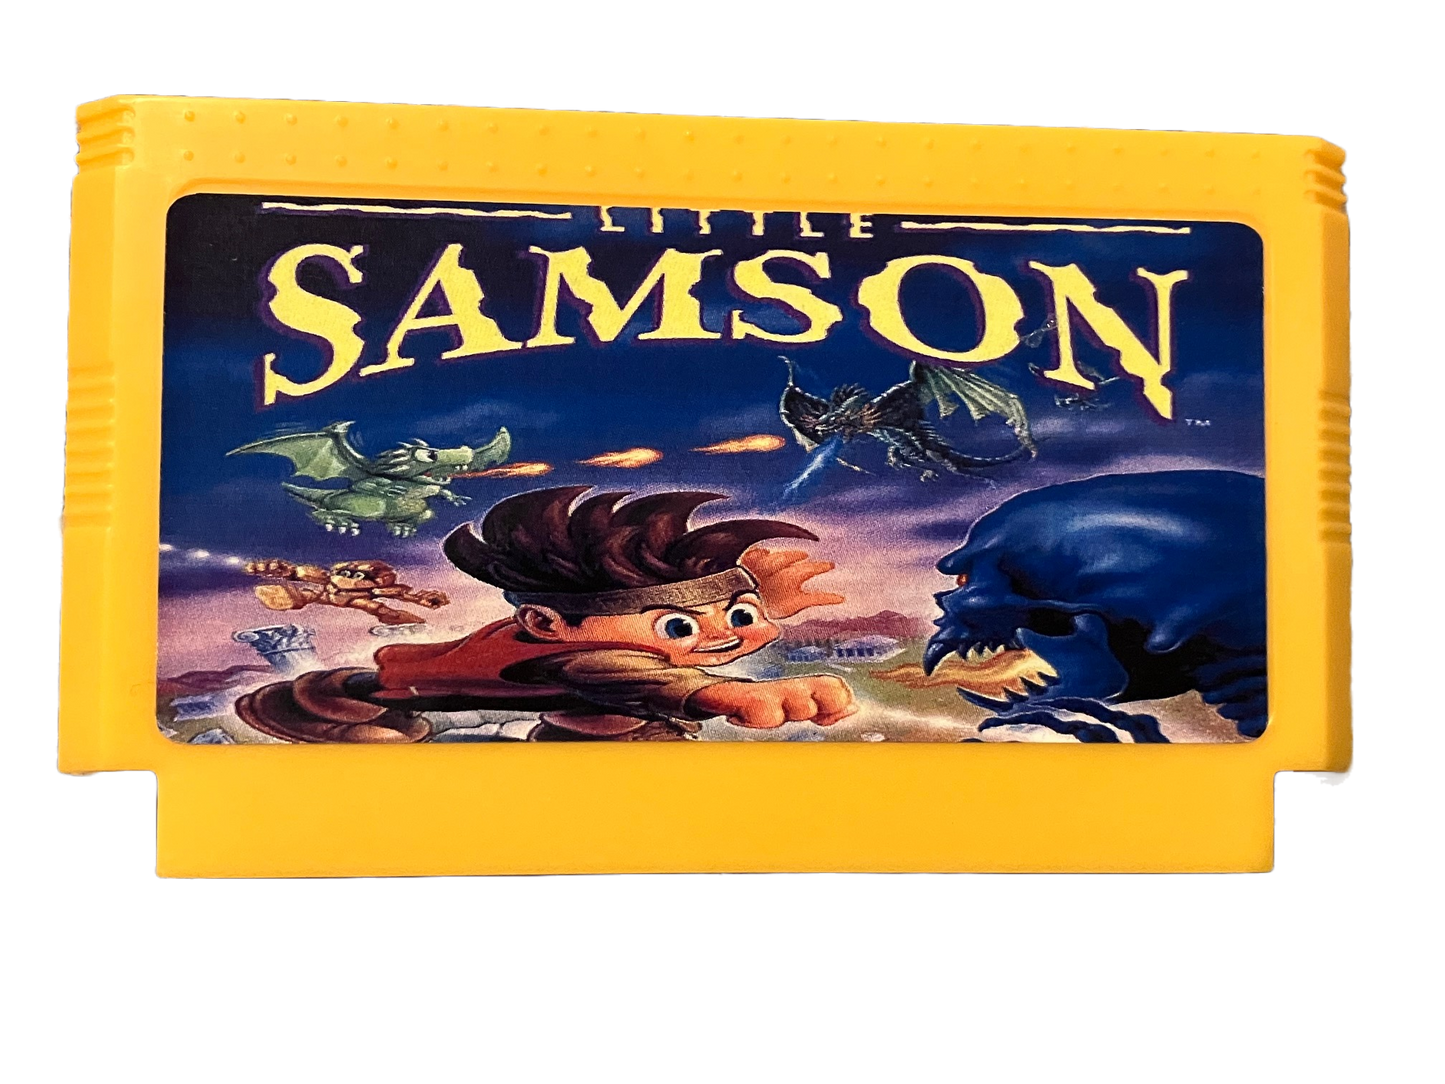 Little Samson Japanese Nintendo Famicom Video Game